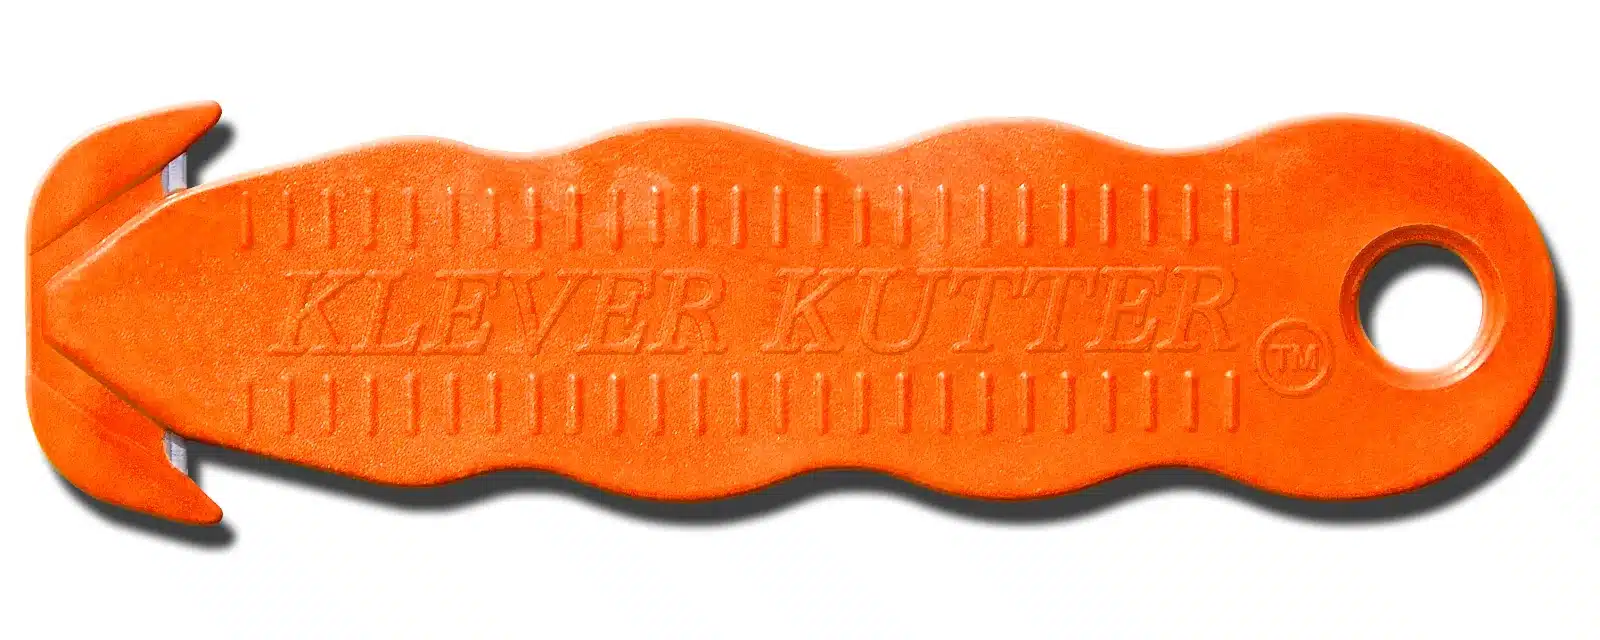 H035O Sicherheitsmesser Klever Kutter orange CURT-tools_1600